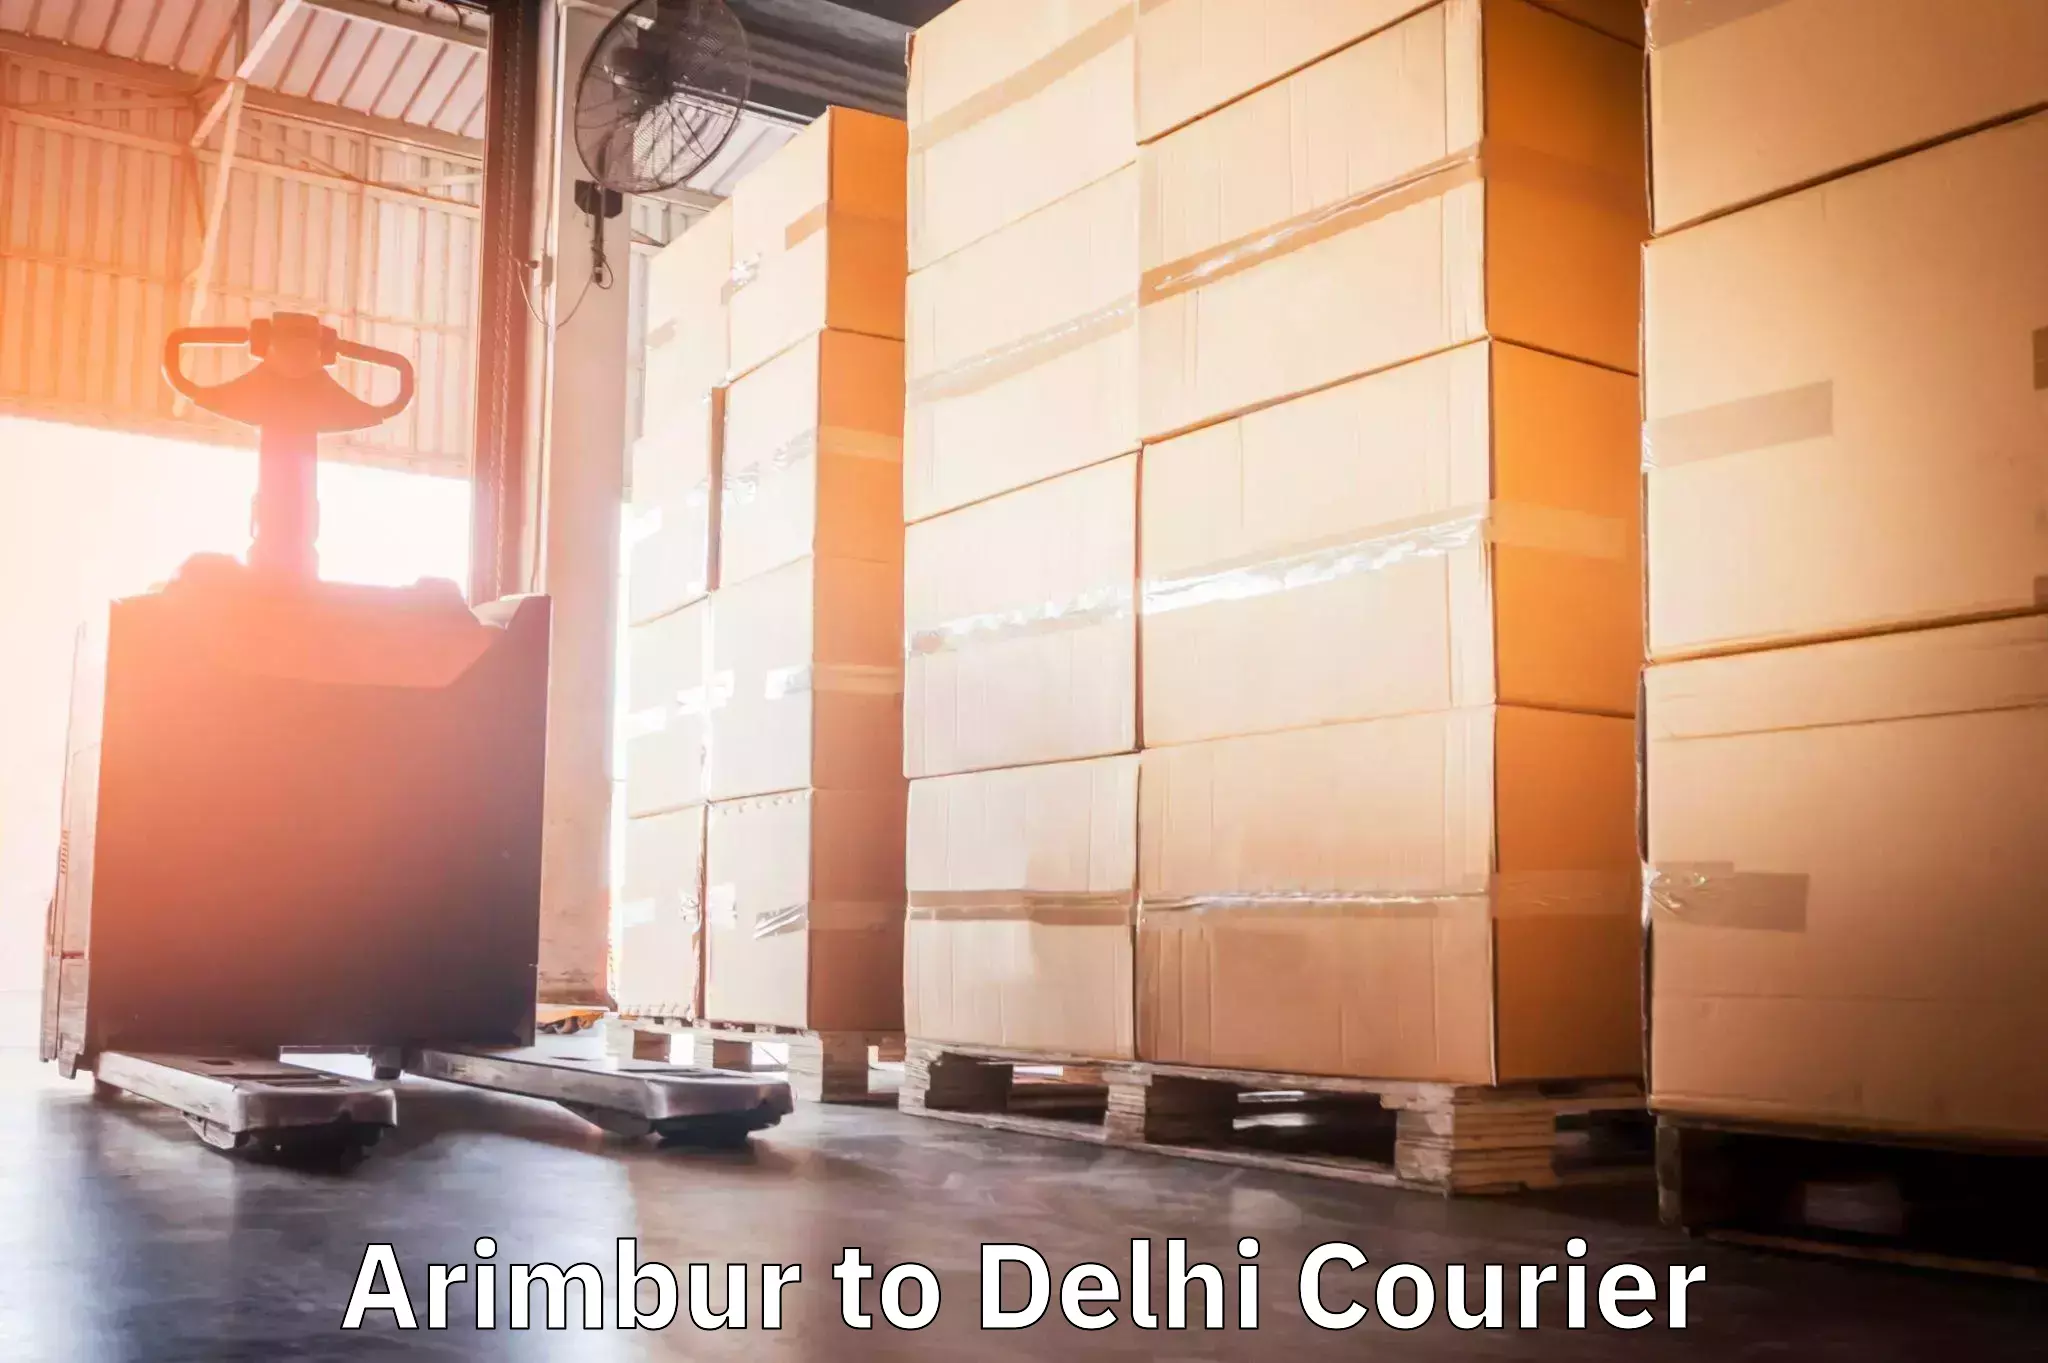 24/7 courier service Arimbur to Jhilmil